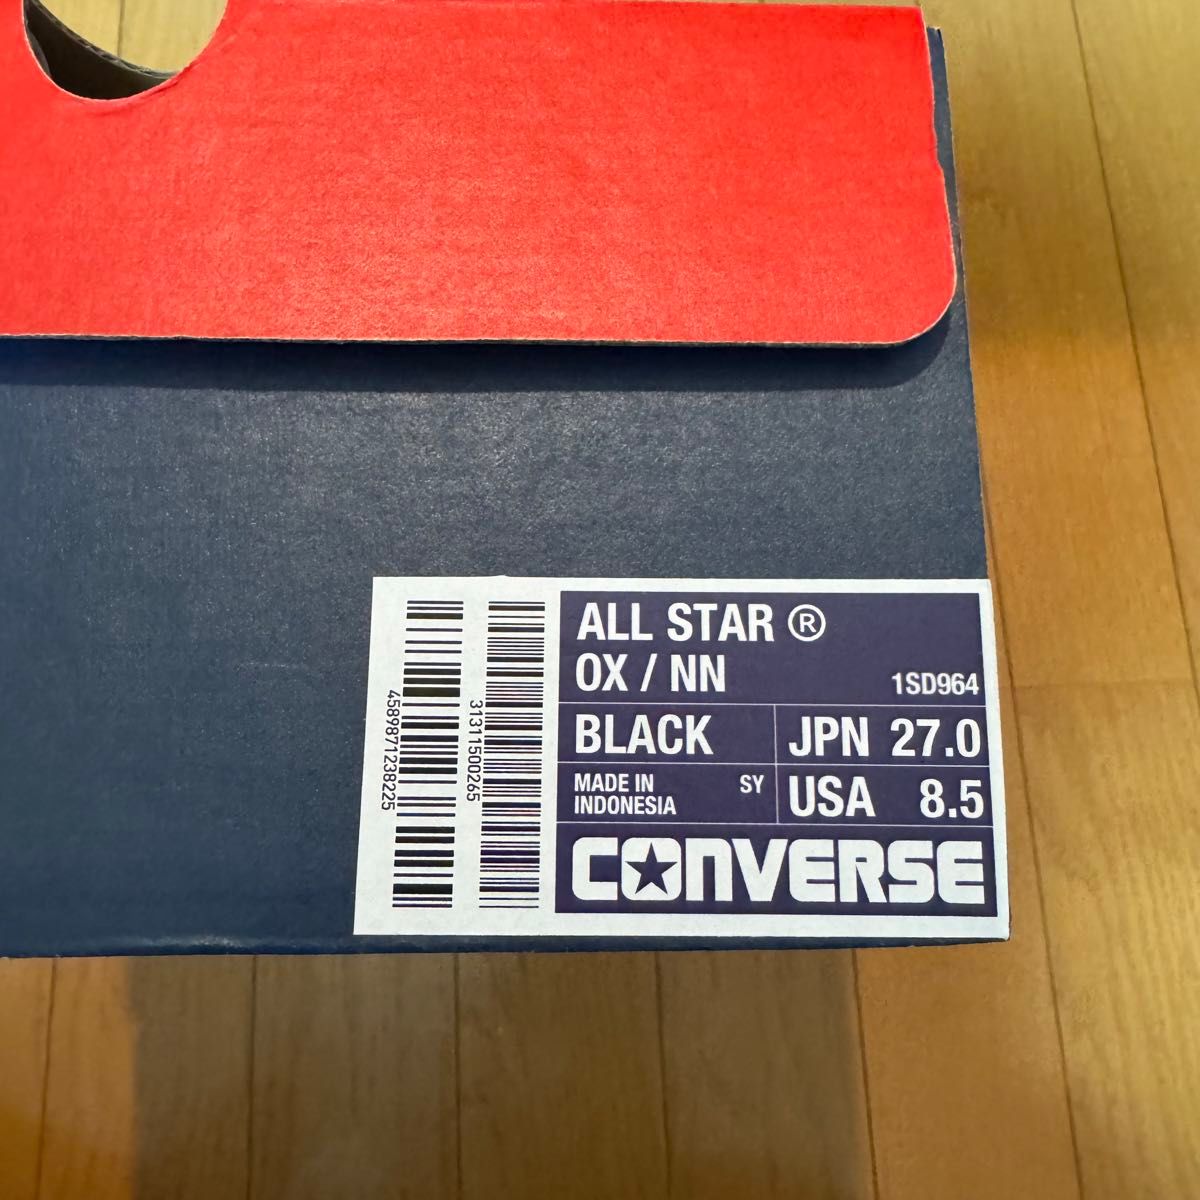 nonnative × Converse All Star OX / NN "Black"